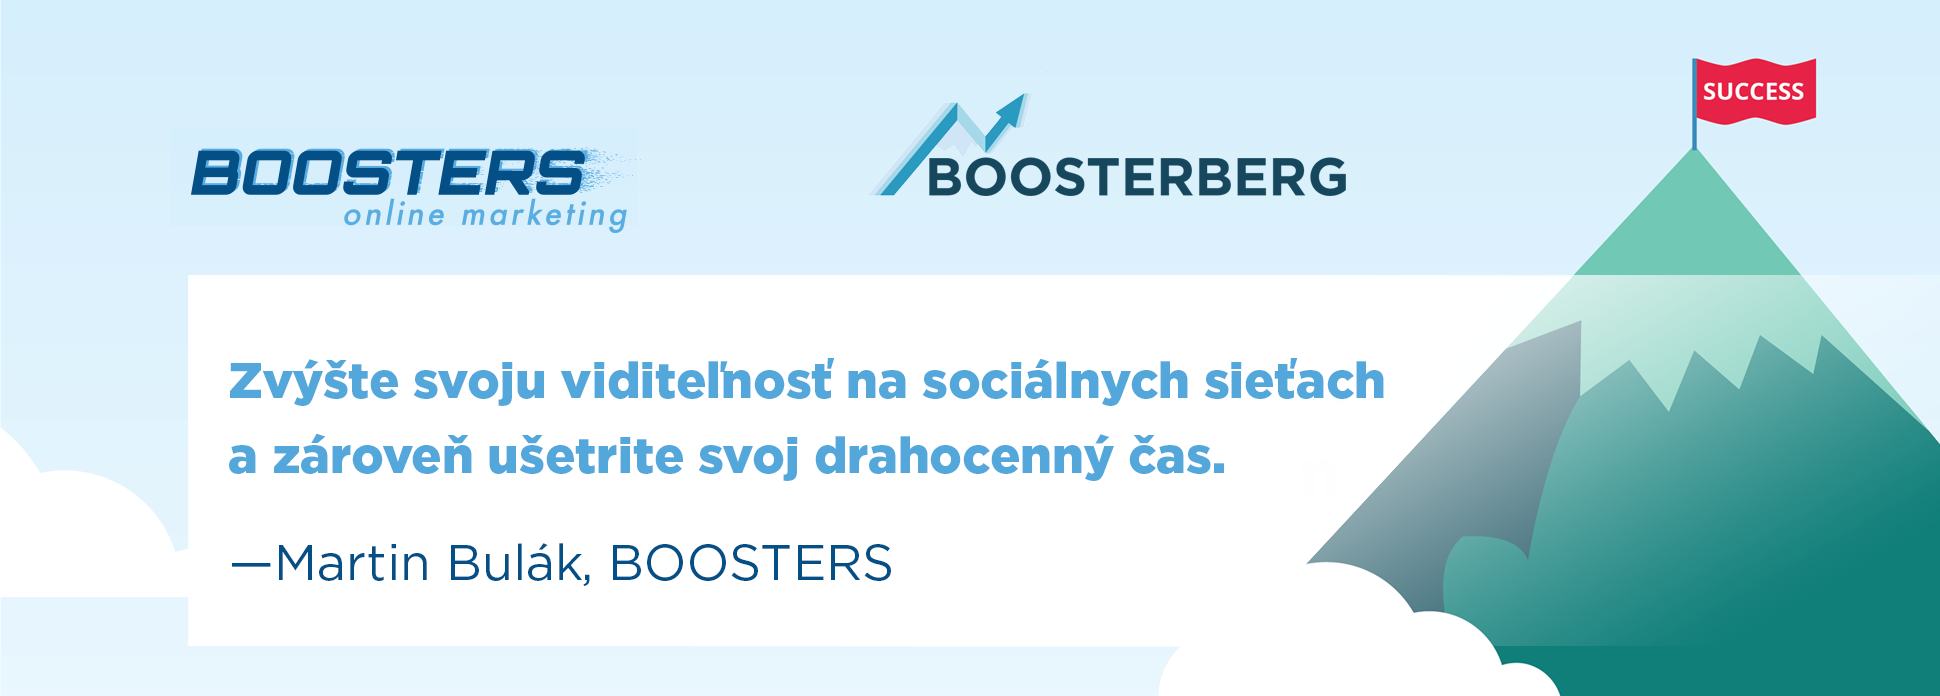 alt="BOOSTERS - Boosterberg vám pomôže zvýšiť viditeľnosť vašich Facebook stránok a ušetriť čas."